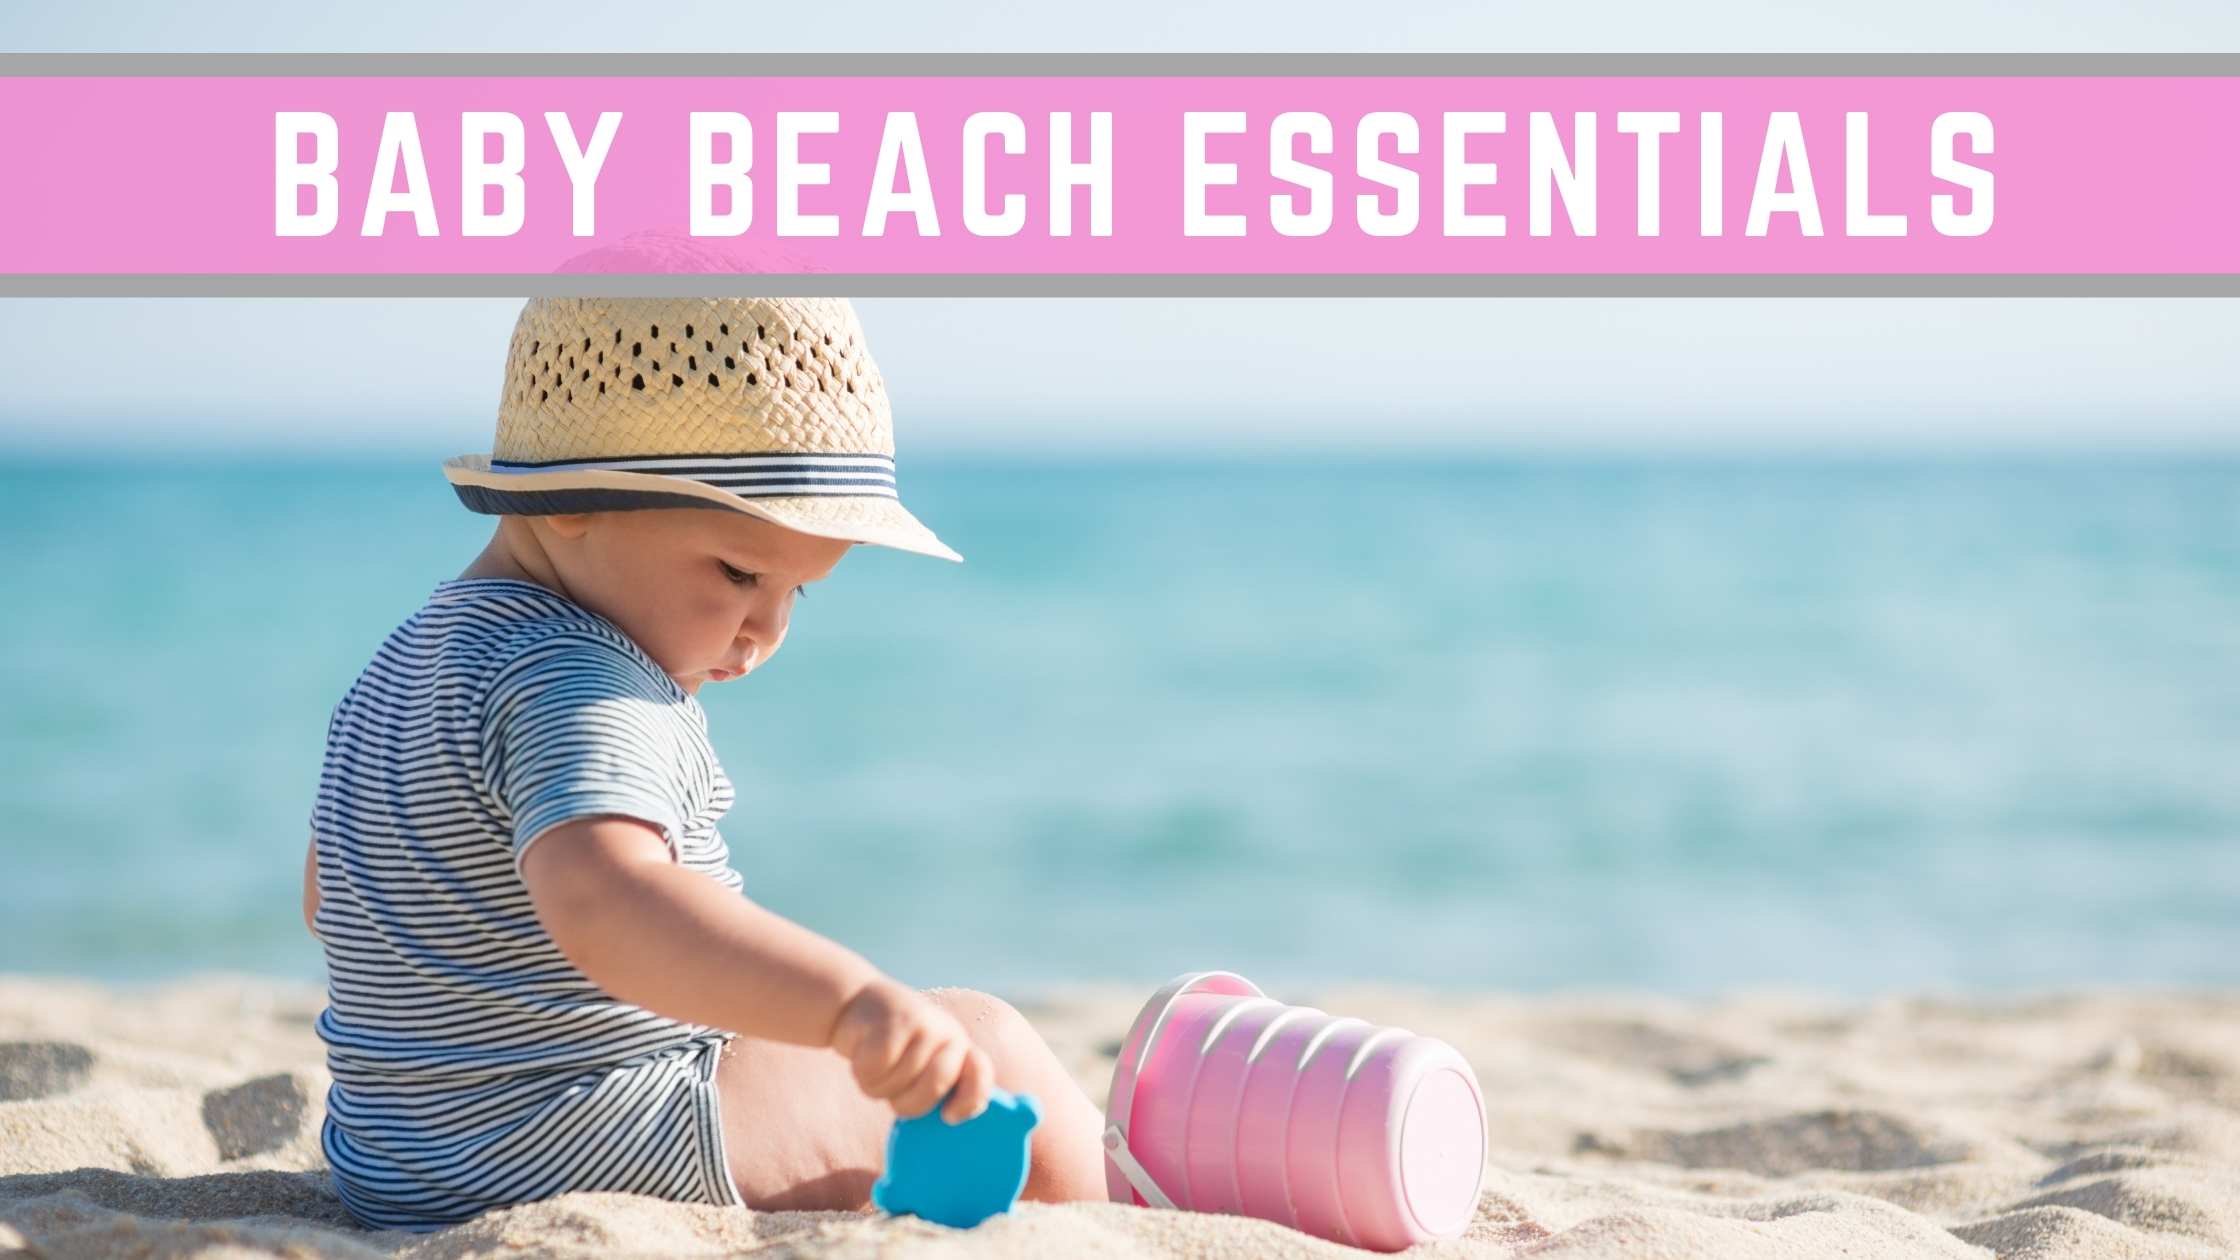 Baby beach essentials